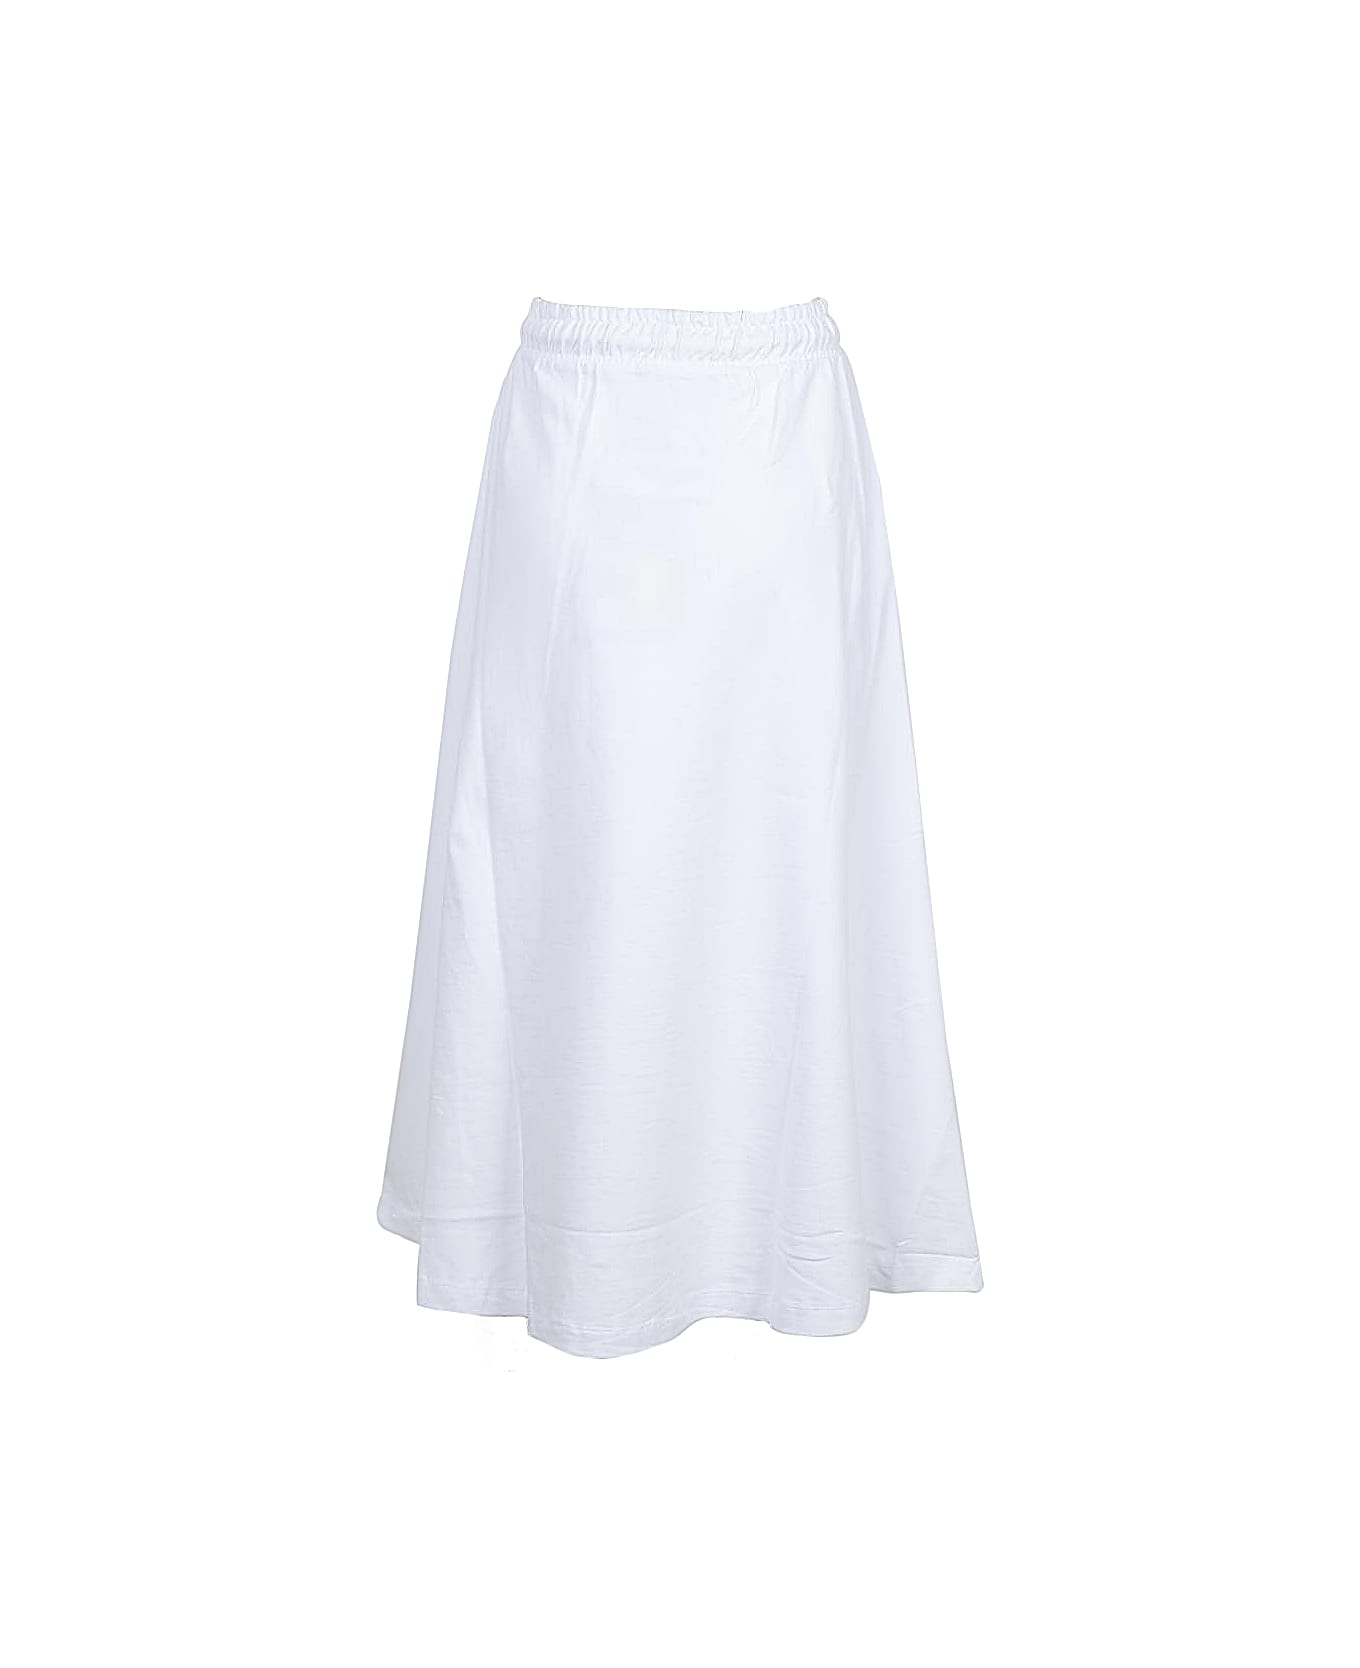 Boy London Women's White Skirt - White